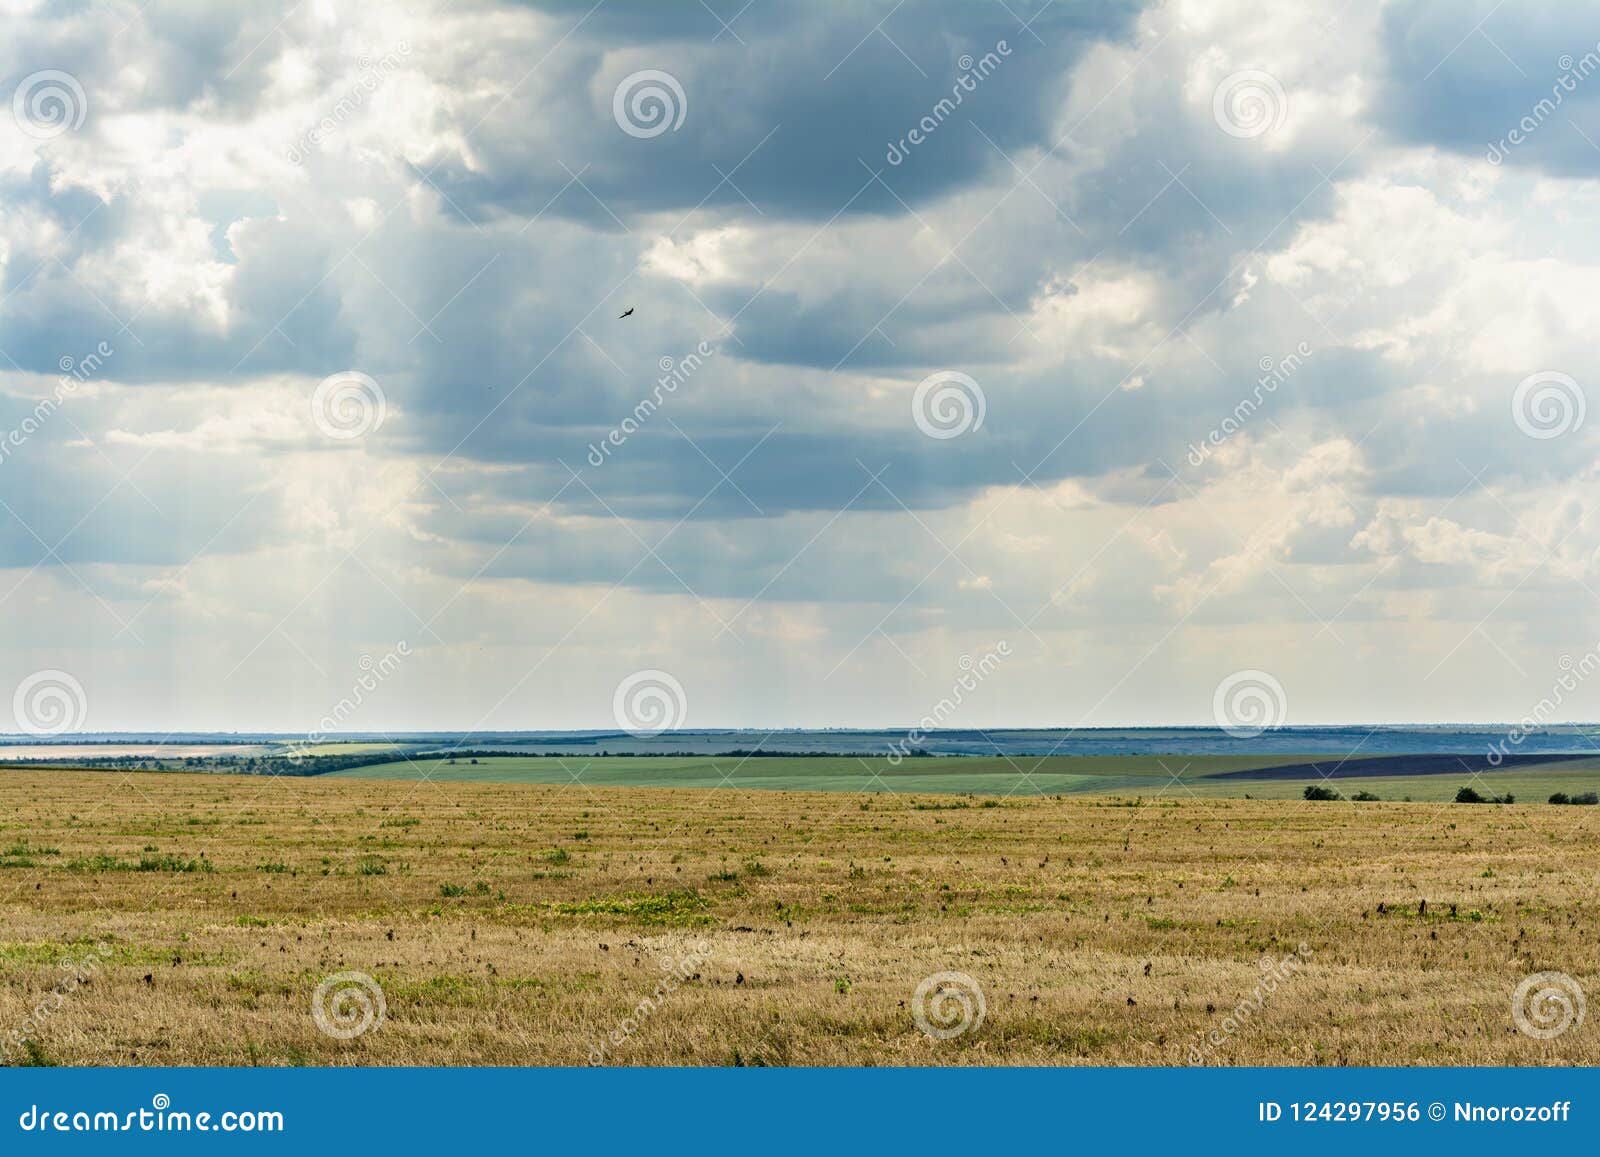 Blauwe hemel met wolken, gebied met vernietigd gras en groene vegetatie, de zomer bewolkte dag, aardlandschap